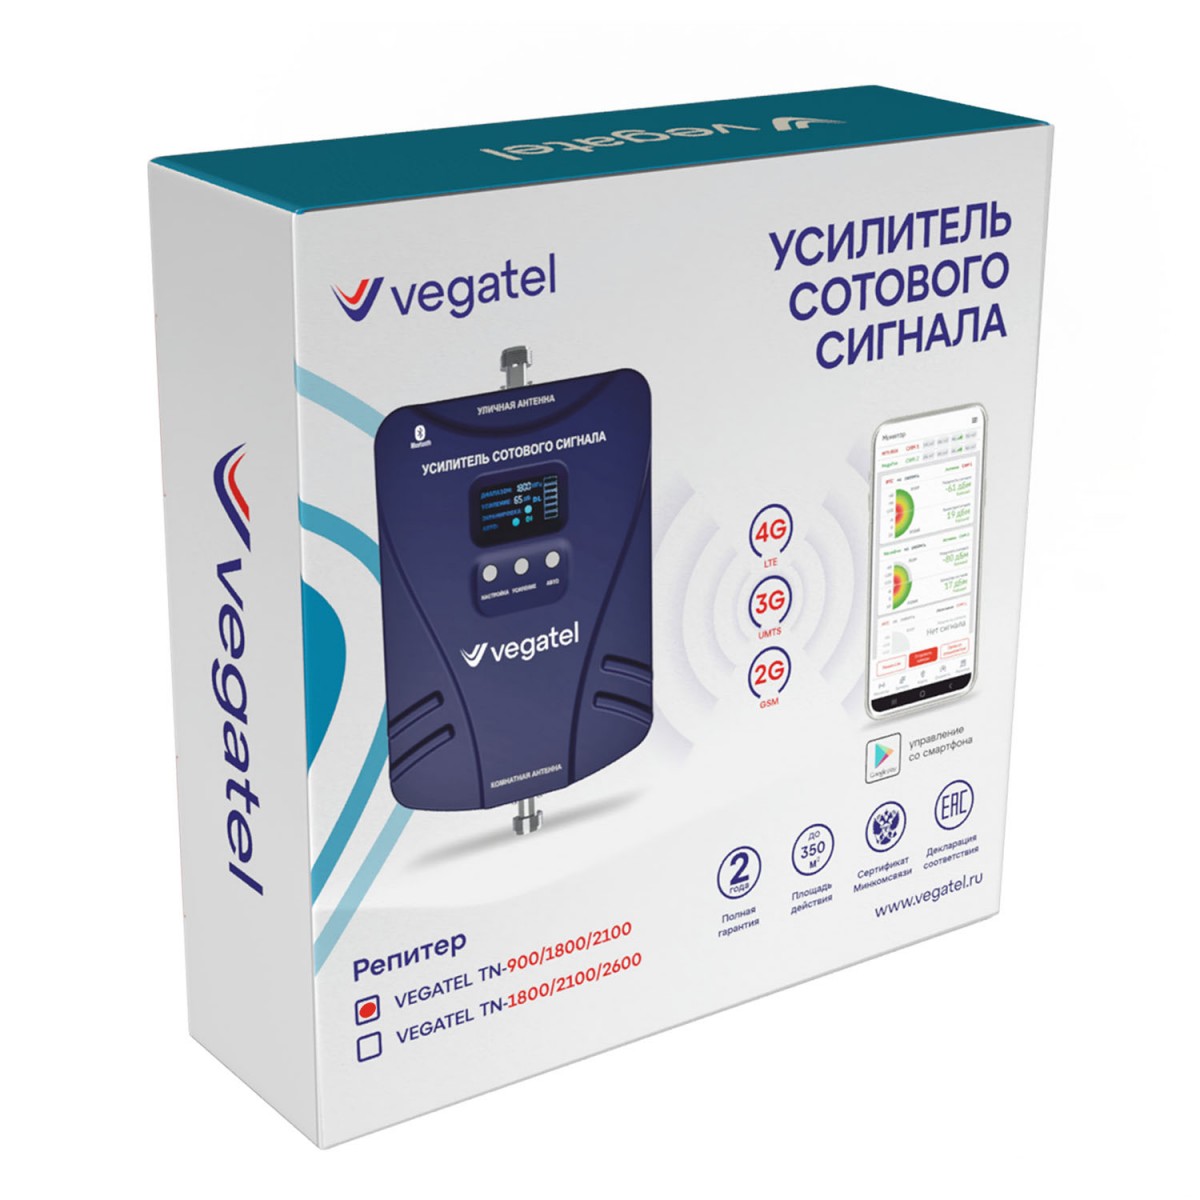 Детальное изображение товара "Комплект усиления сотовой связи Vegatel TN-900/1800/2100" из каталога оборудования Антенна76